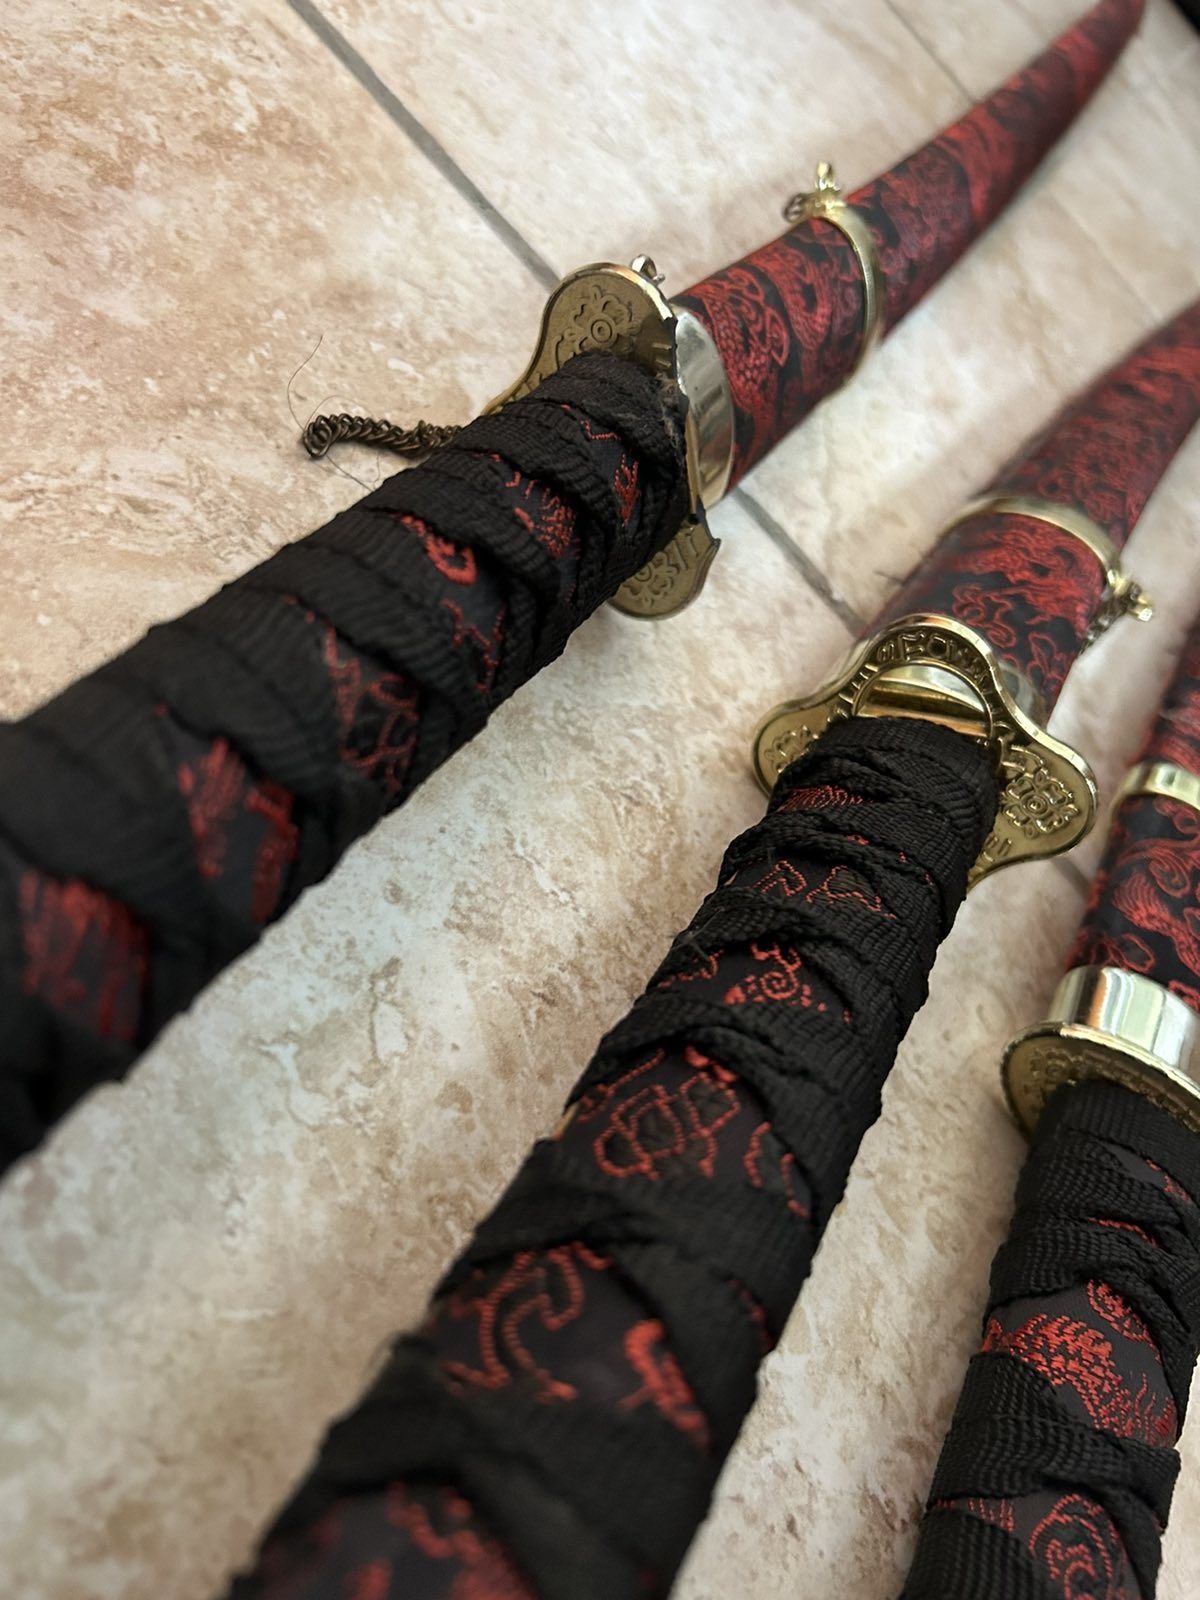 Комплект самурайски мечове Катана